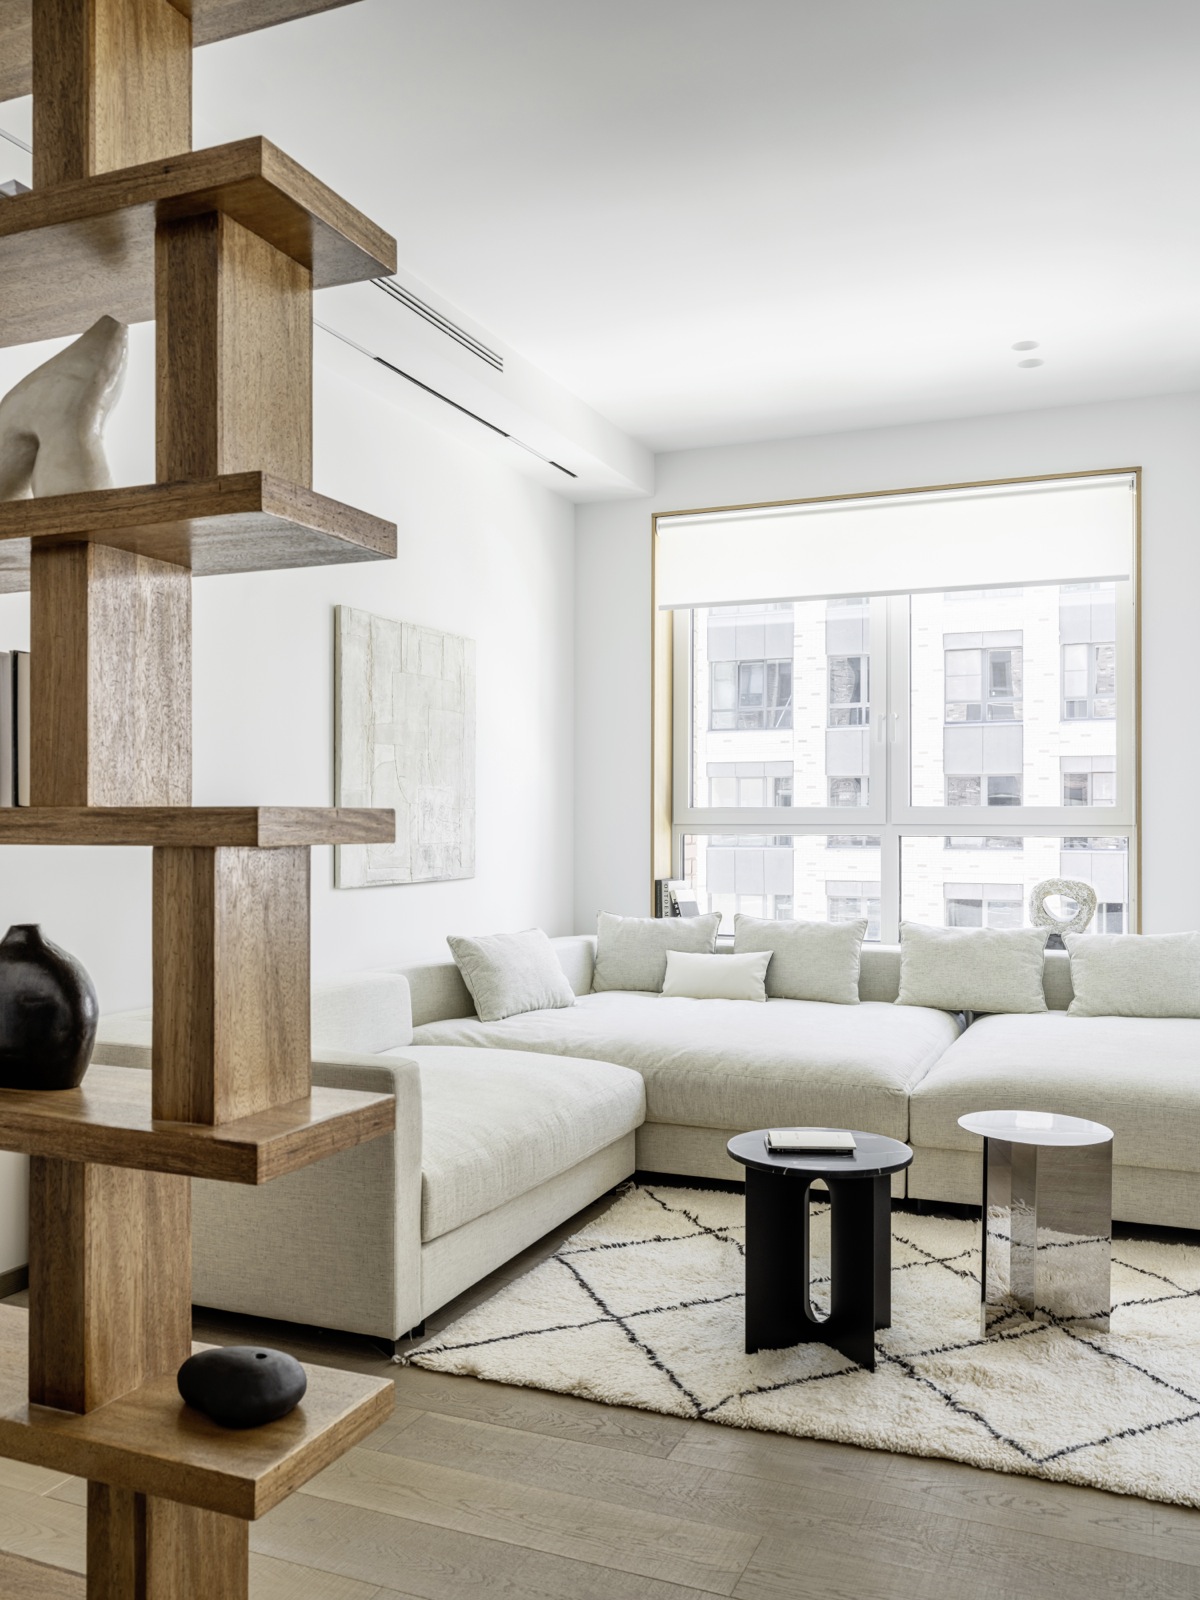 Phòng khách bố trí ghế sofa góc với màu trắng ấm, 'tone sur tone' với tường và trần nhà giúp xóa bỏ ranh giới của căn hộ một cách trực quan.